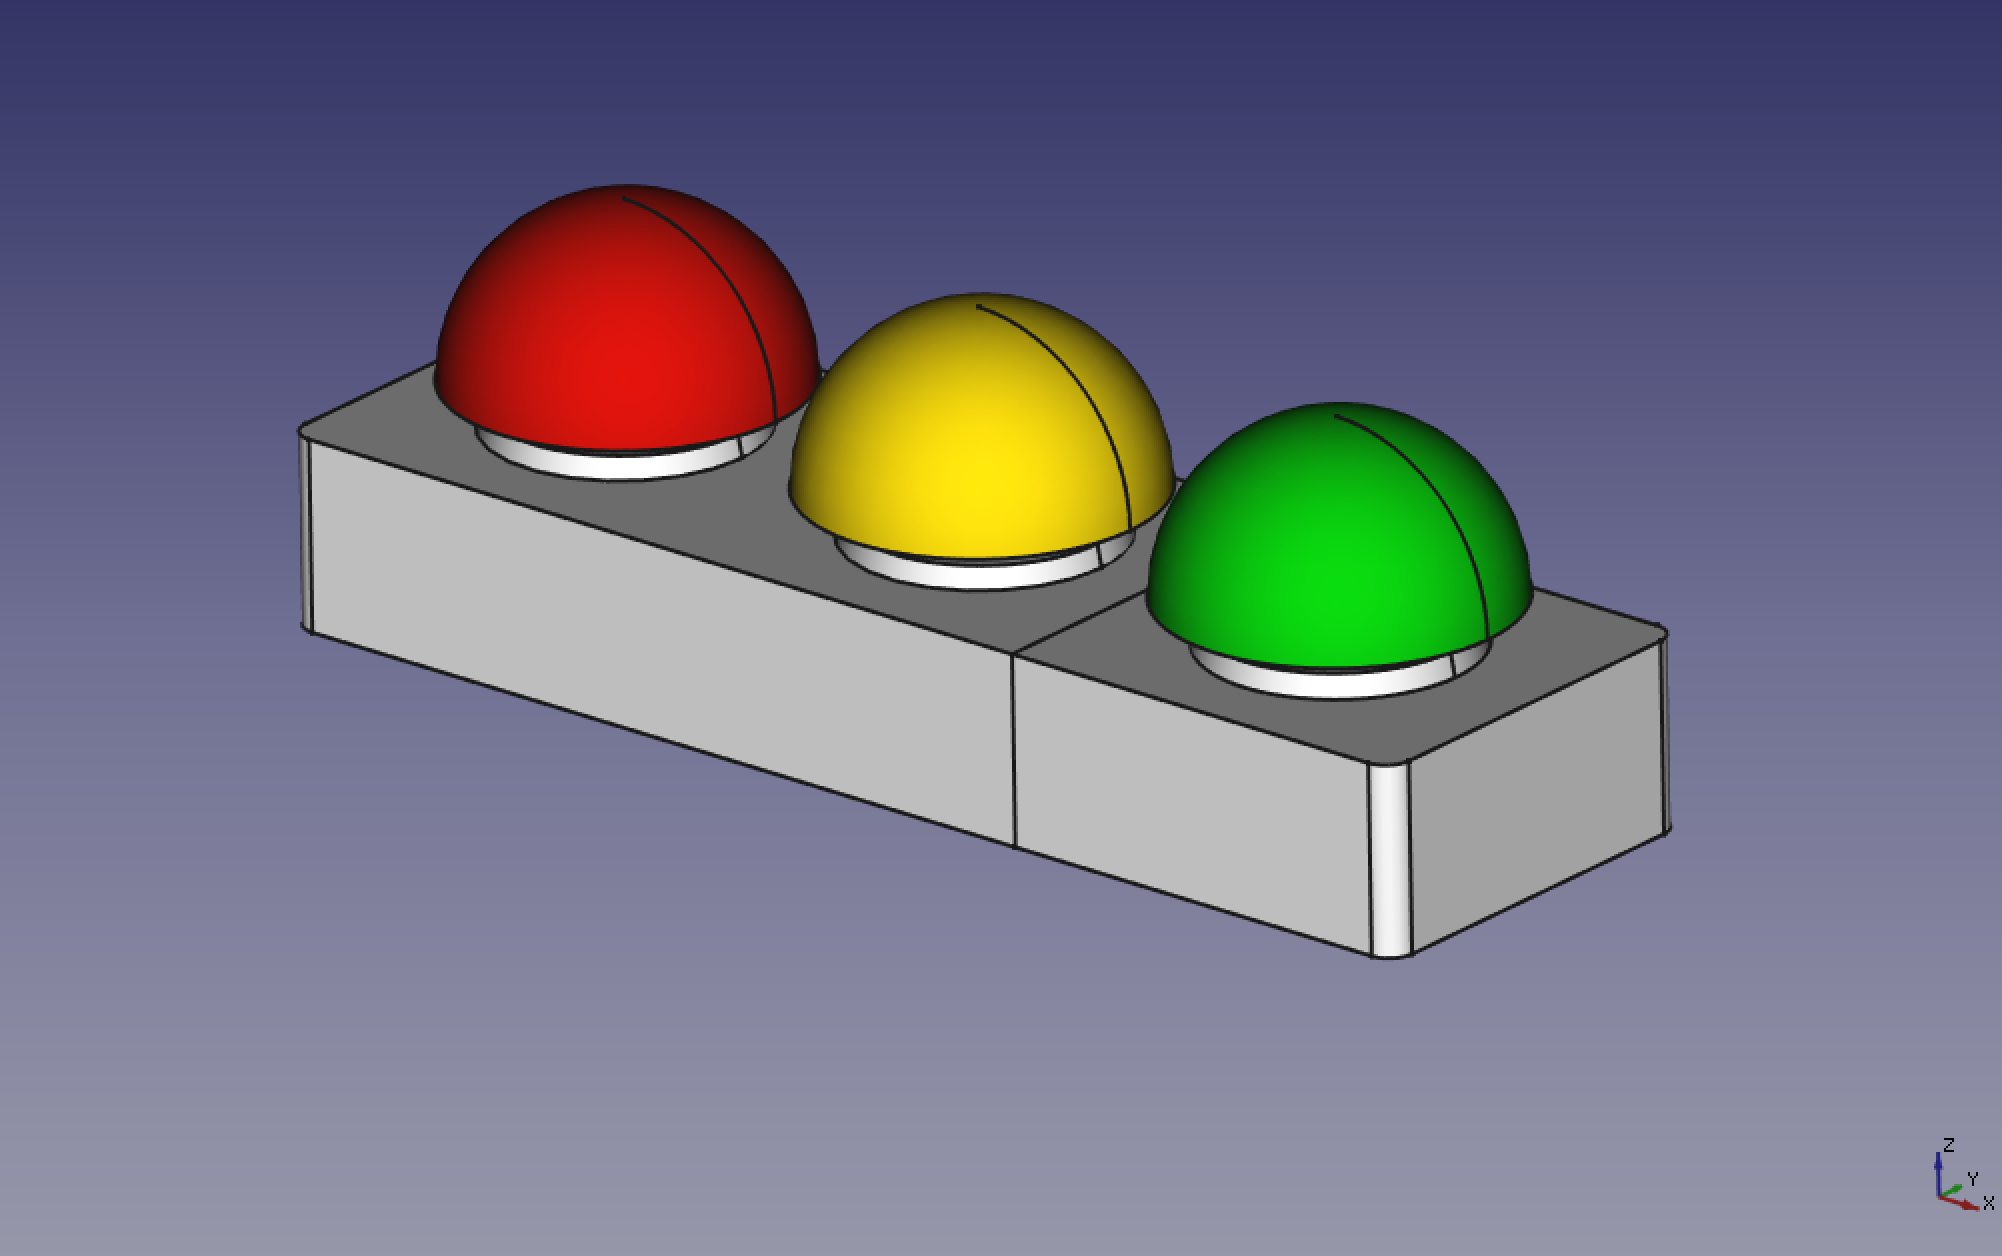 Simplistic CAD model